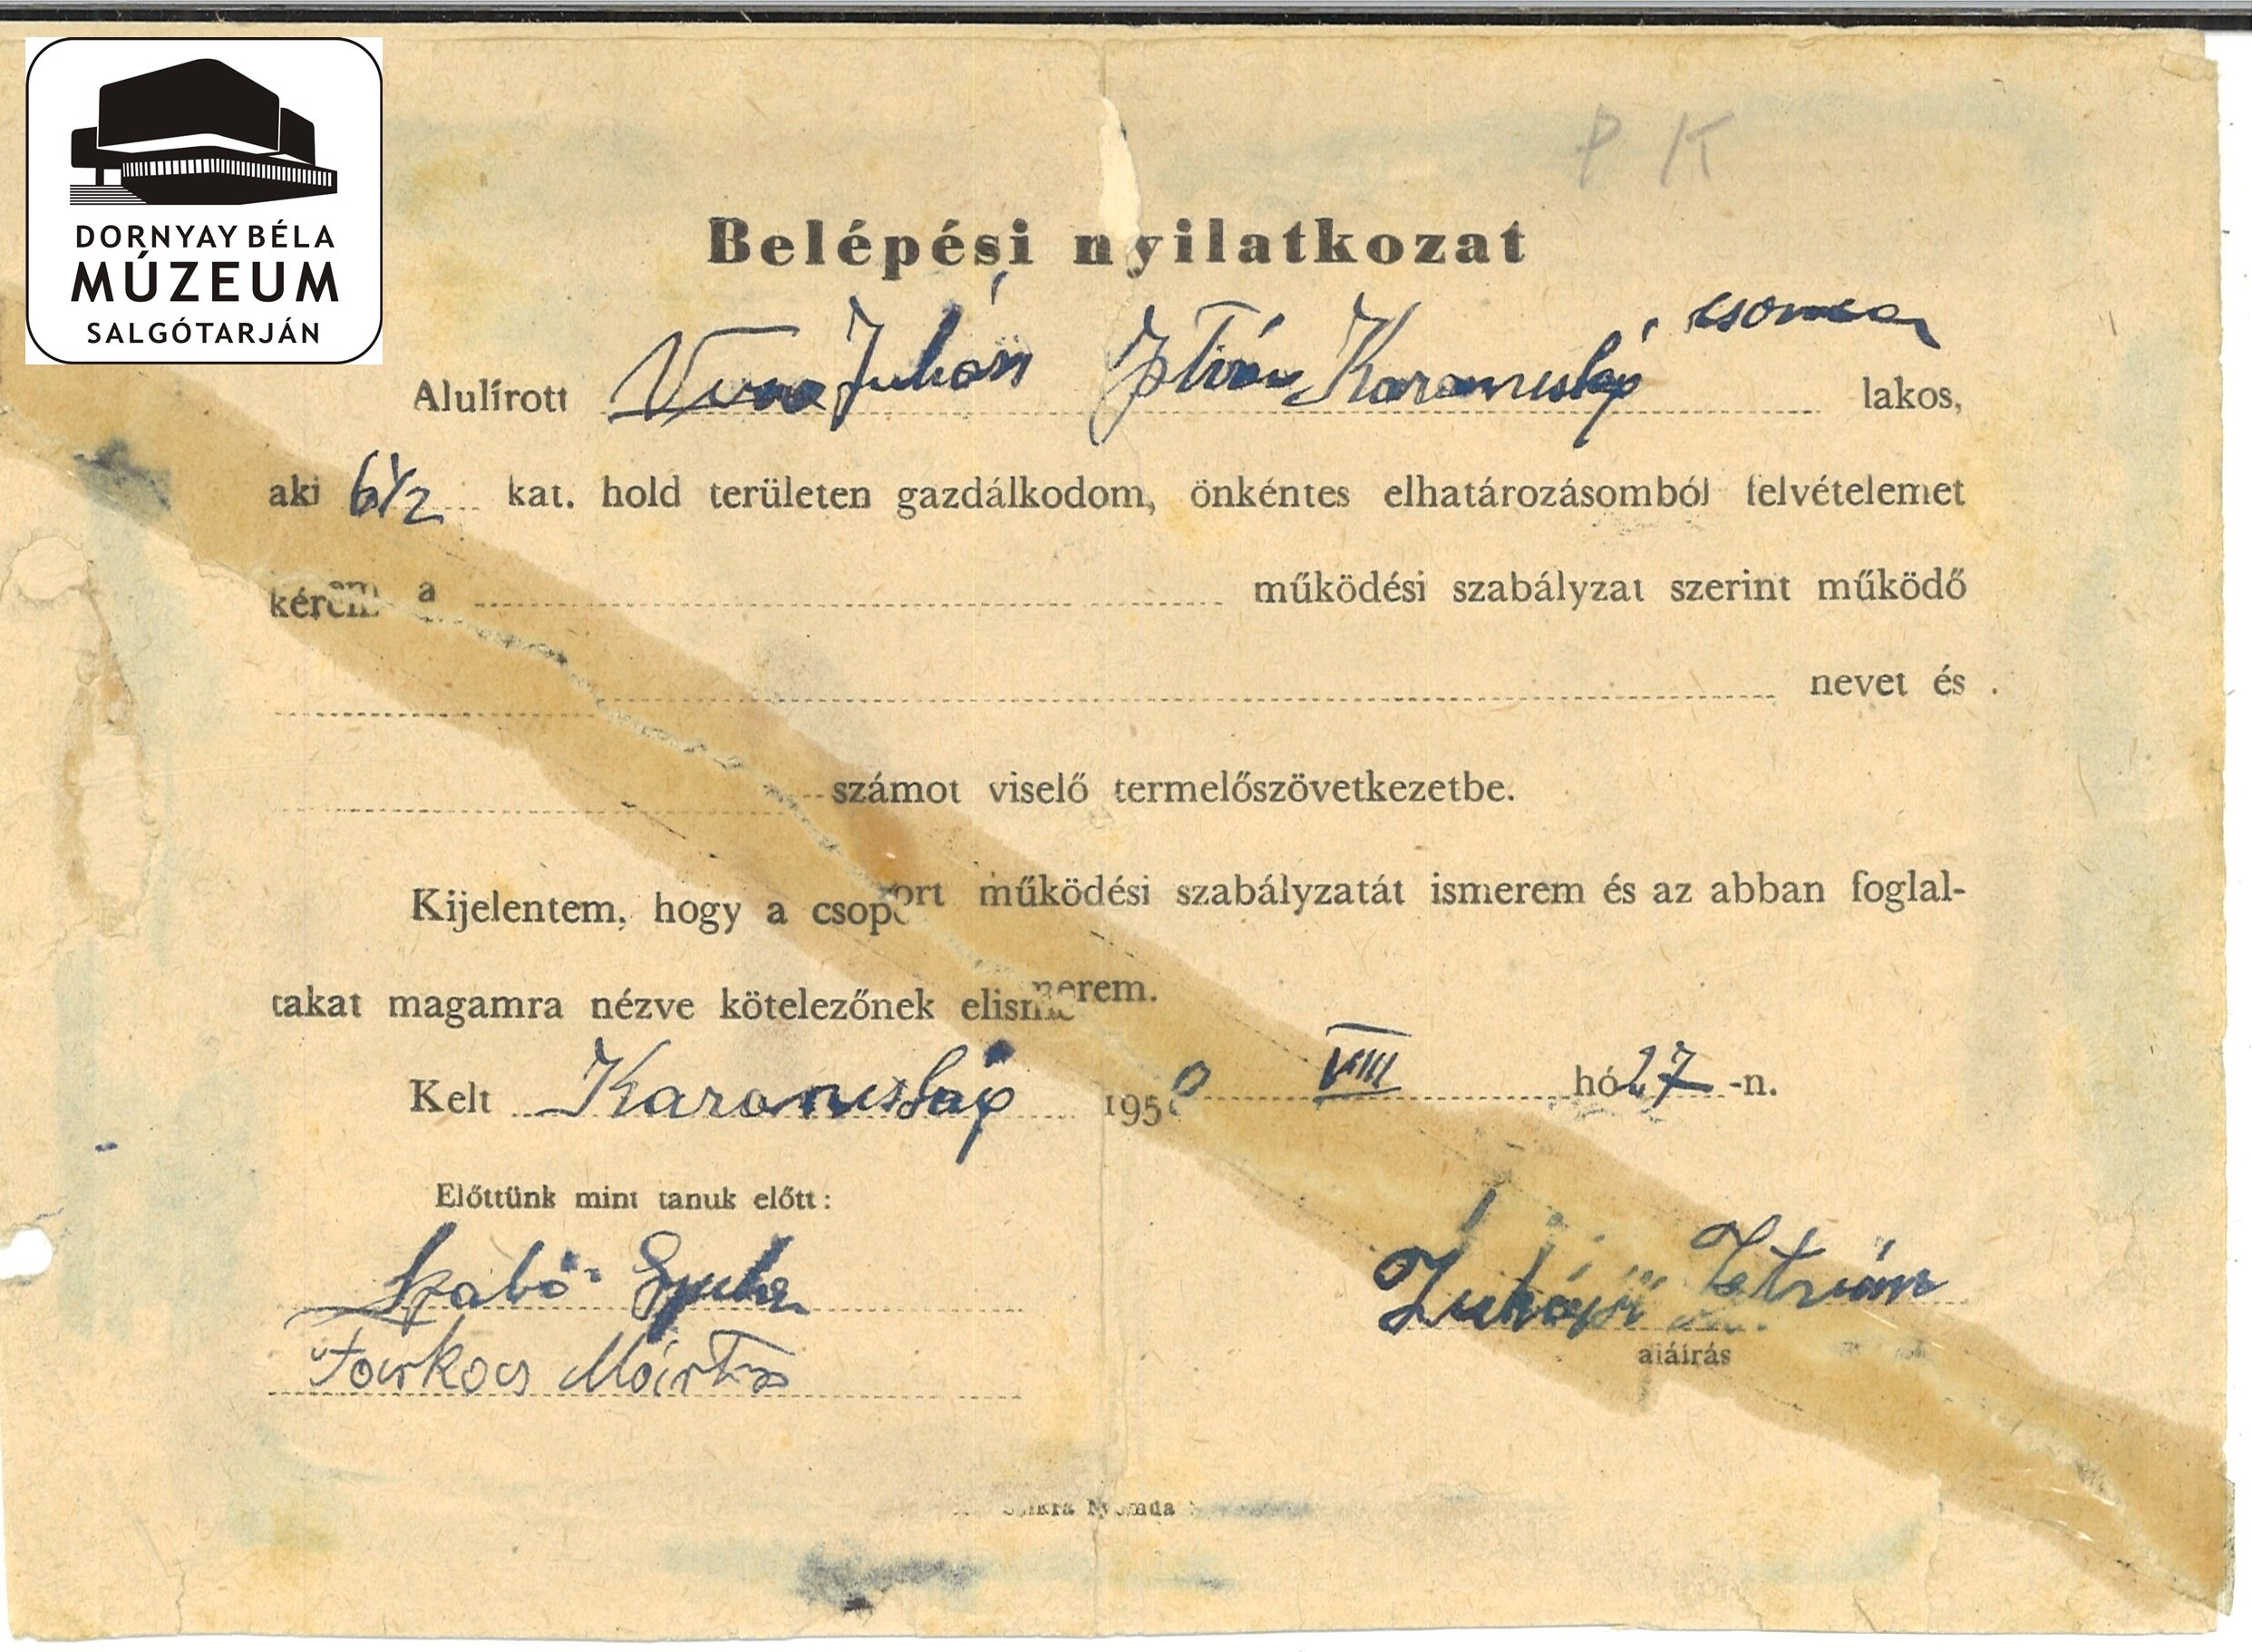 TSz belépési nyilatkozat (Juhász István) (Dornyay Béla Múzeum, Salgótarján CC BY-NC-SA)